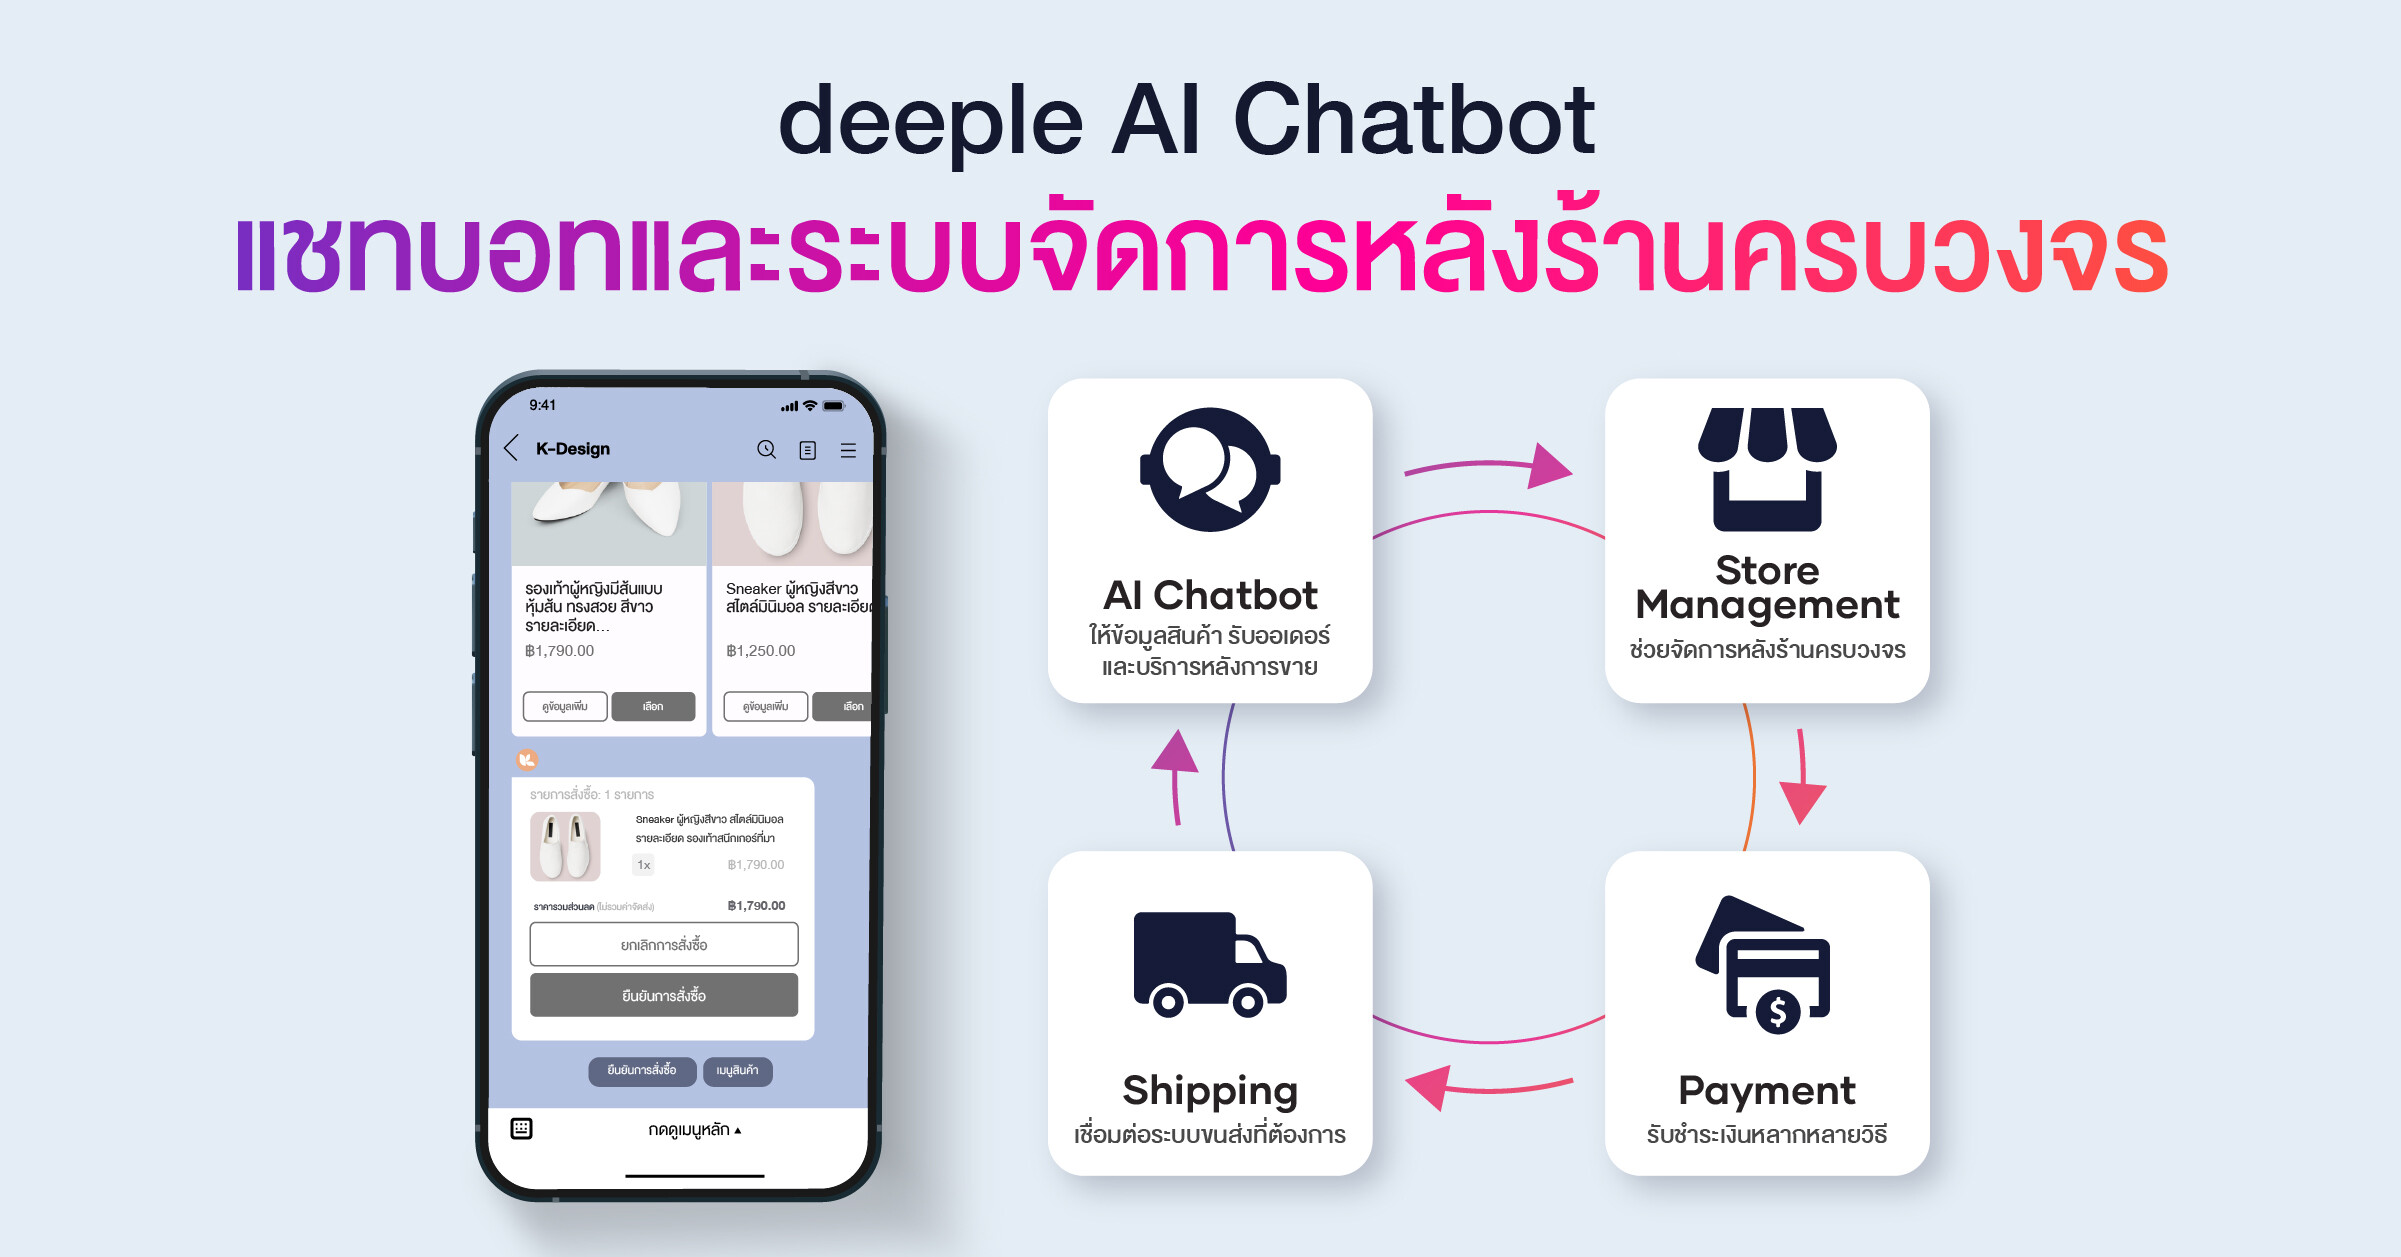 deeple AI Chatbot (ดีเปิ้ล เอไอ แชทบอท) นำเสนอตัวช่วยปิดการขายธุรกิจออนไลน์ แชทบอทพร้อมระบบหลังร้านครบวงจร พร้อมให้ร้านค้าใช้งานฟรีได้แล้ววันนี้